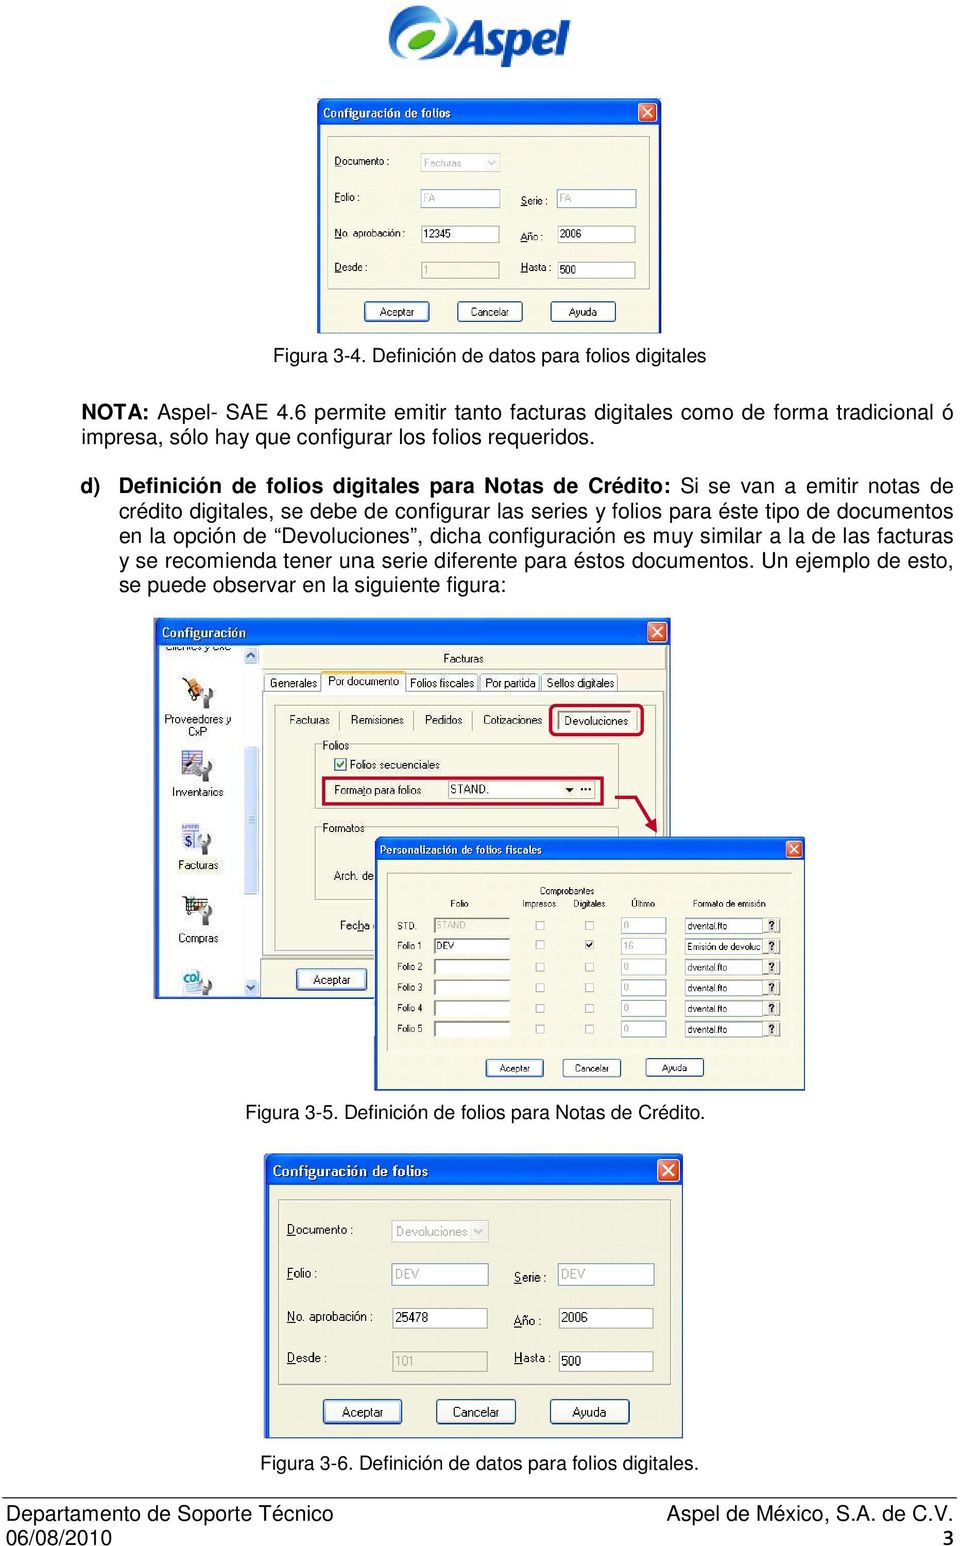 d) Definición de folios digitales para Notas de Crédito: Si se van a emitir notas de crédito digitales, se debe de configurar las series y folios para éste tipo de documentos en